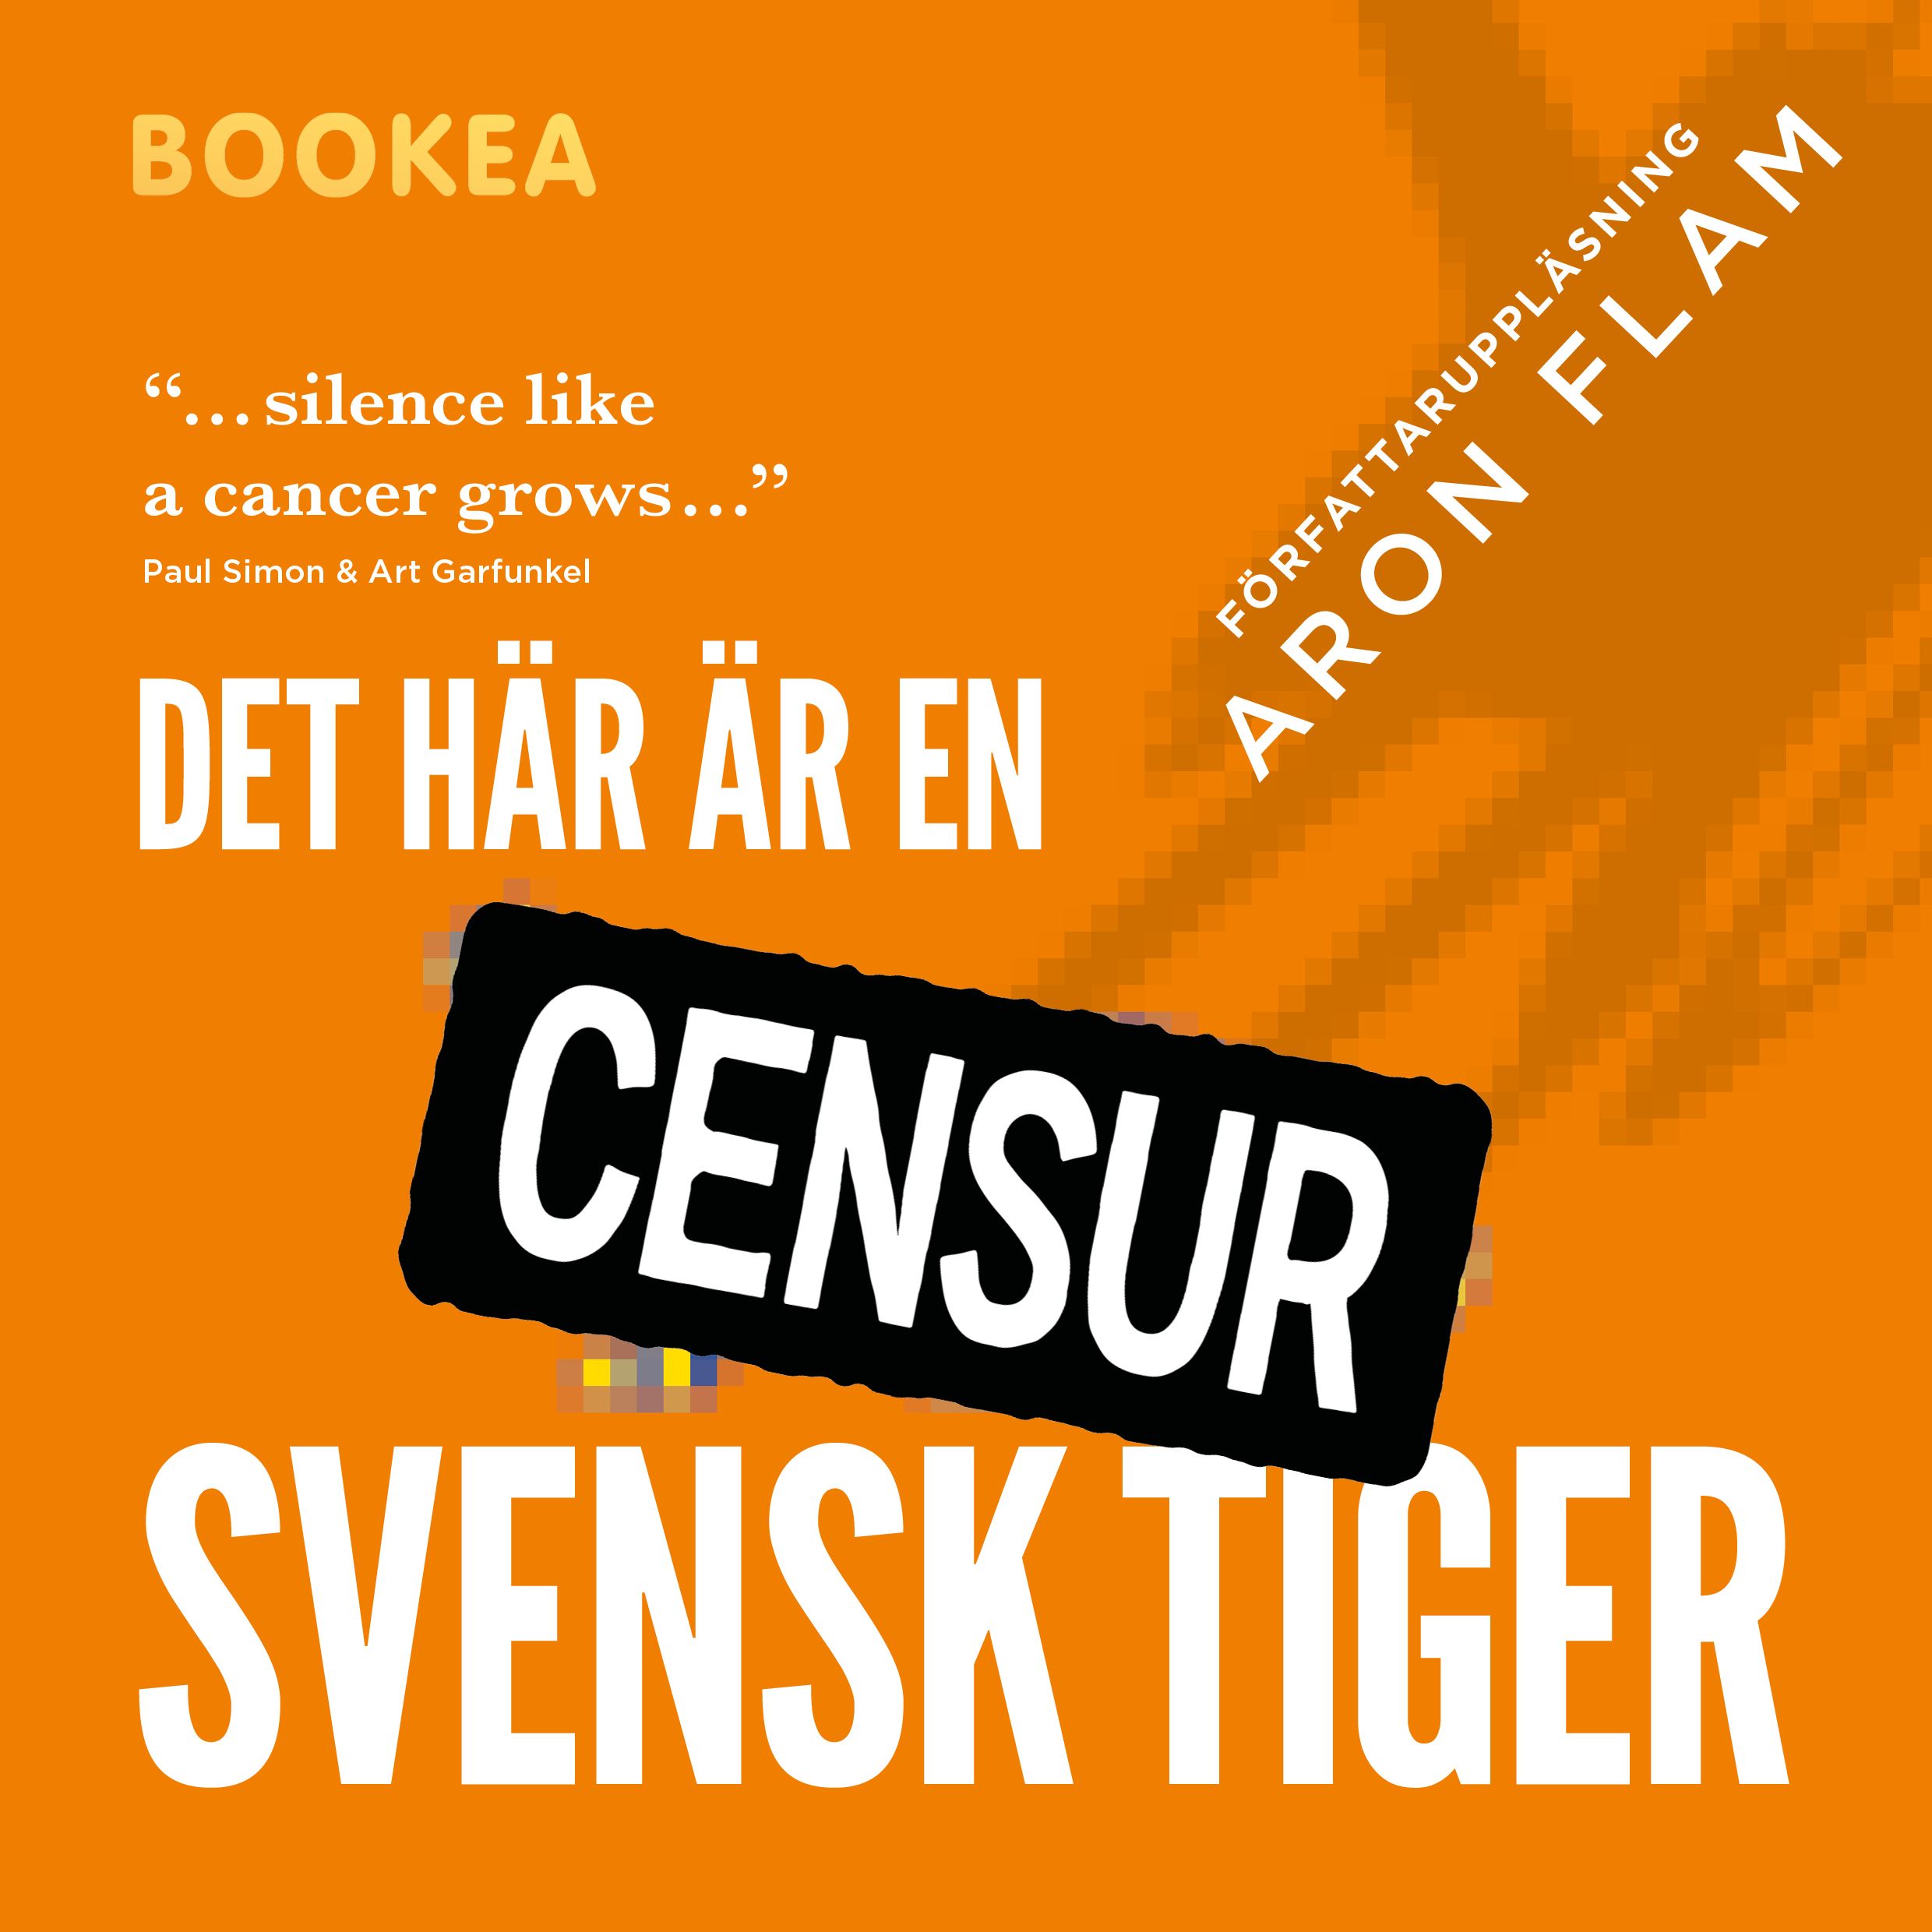 Det här är en svensk tiger, audiobook by Aron Flam